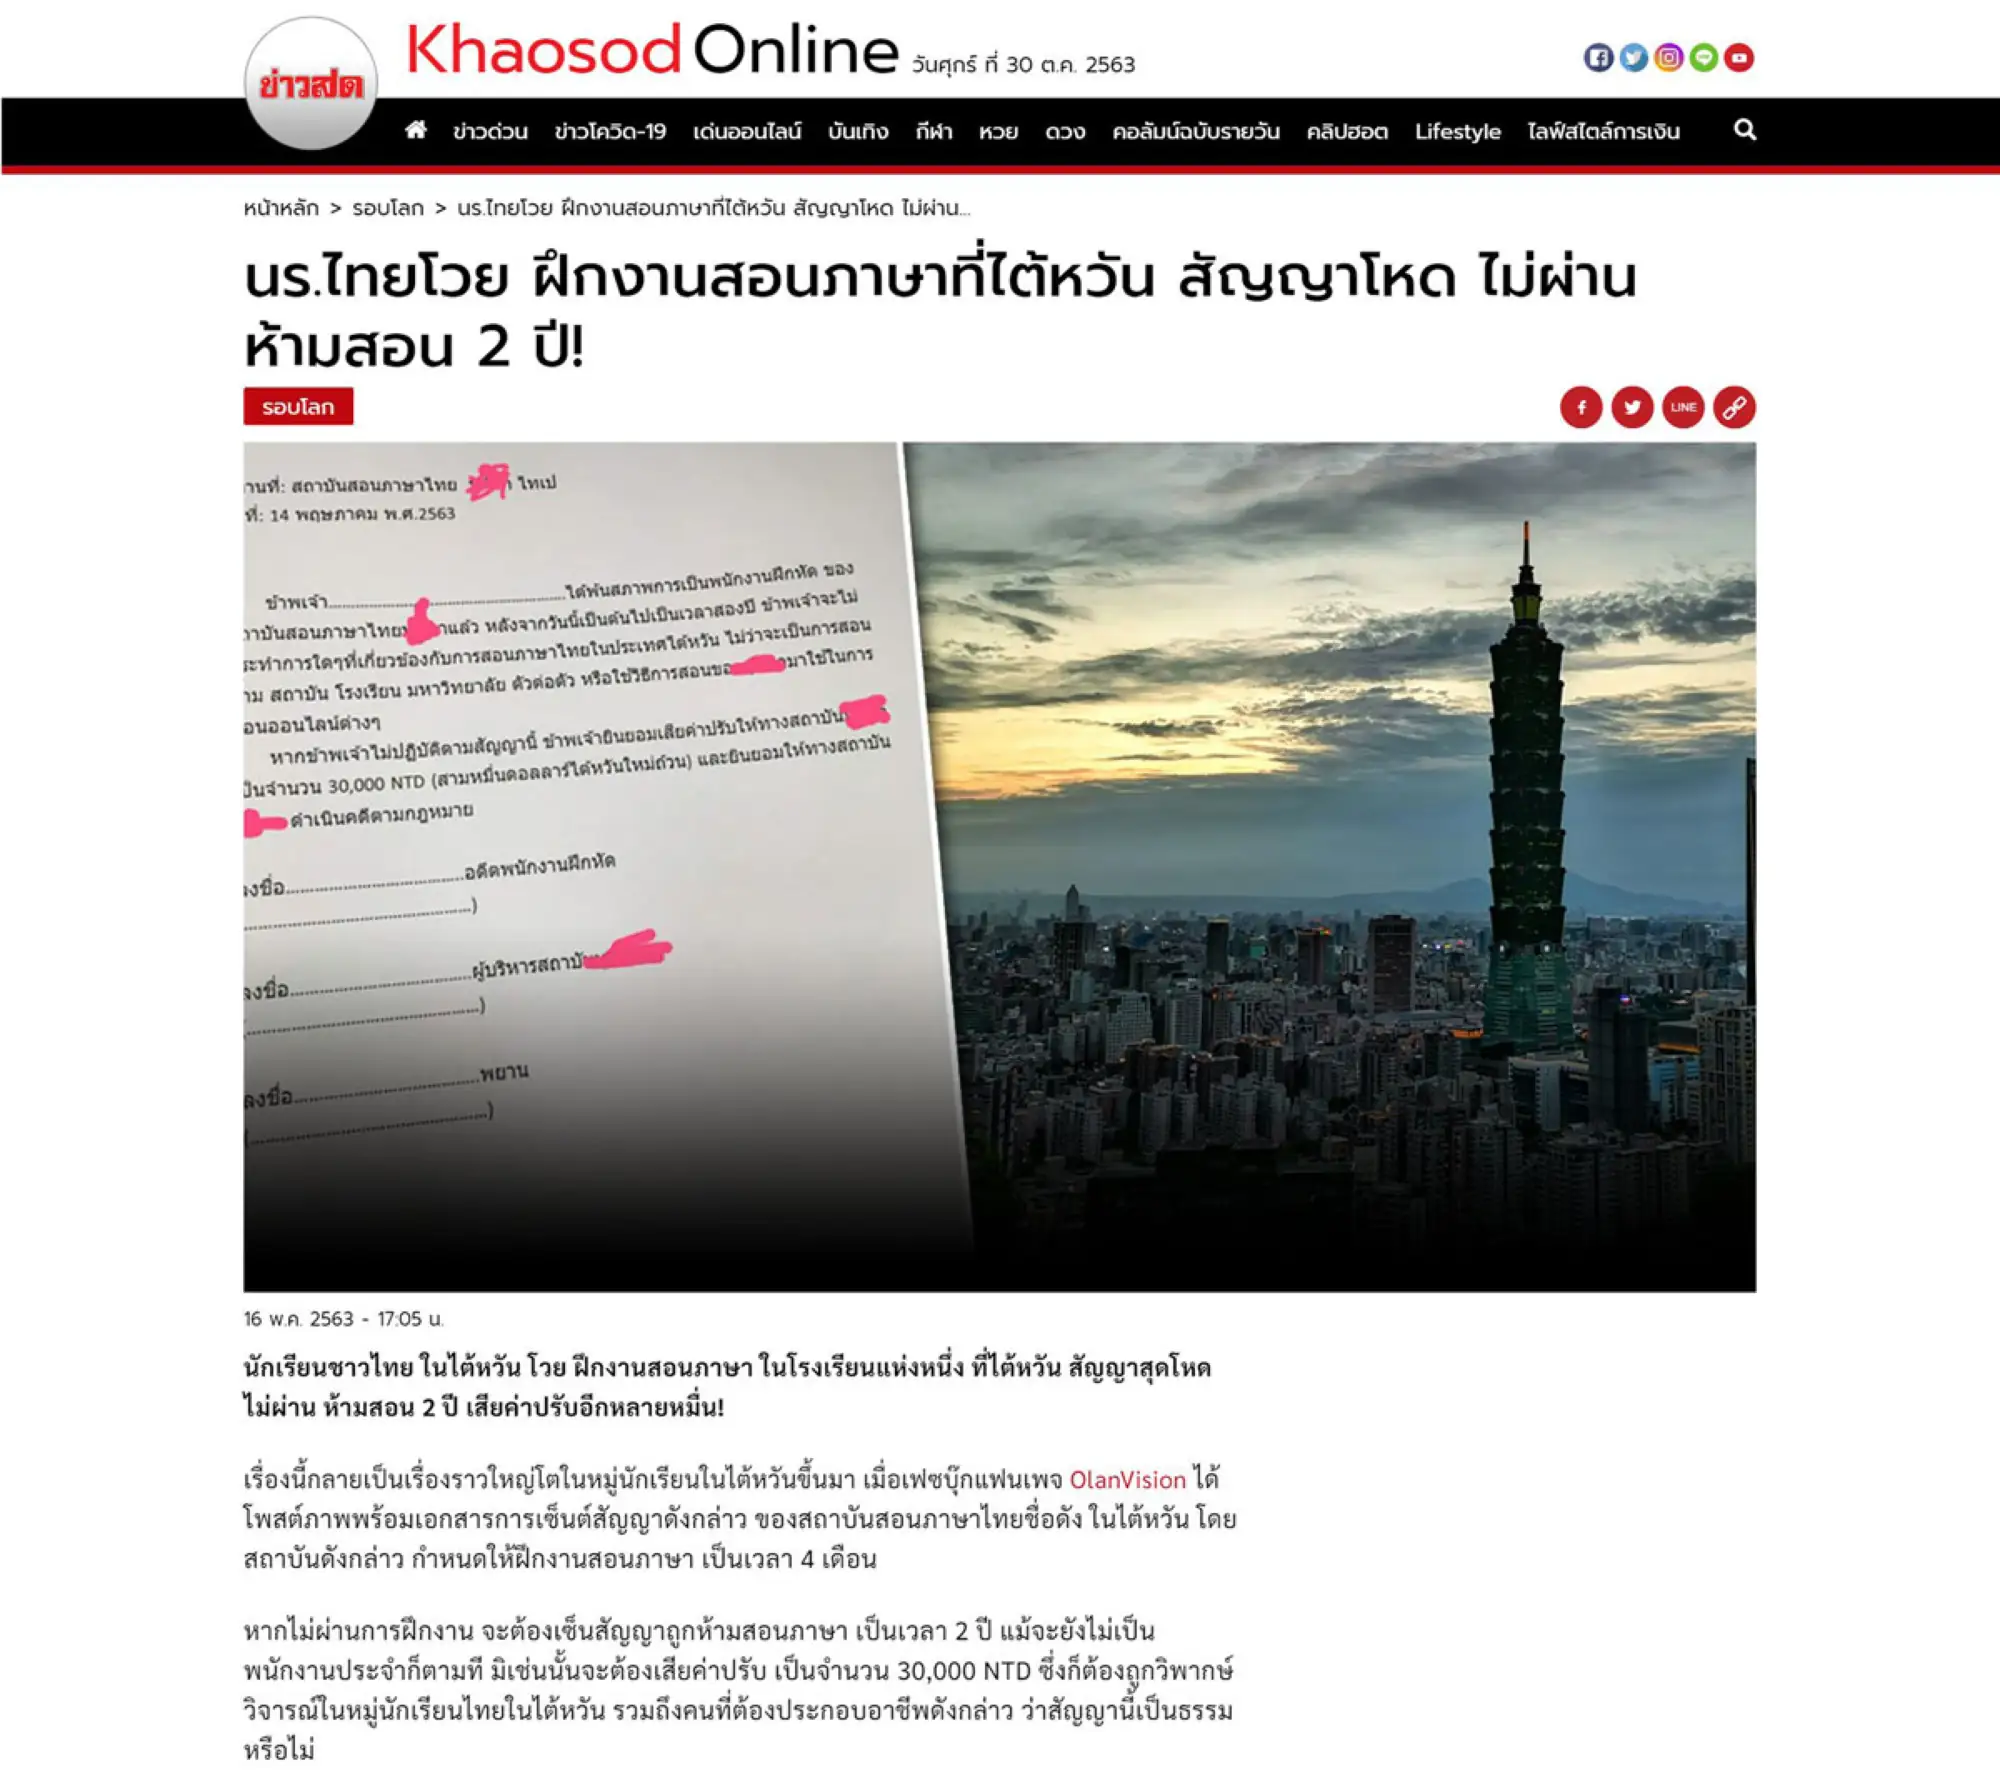 泰国媒体鲜新闻Khaosod於2020年5月16日报导泰国目的达教室事件